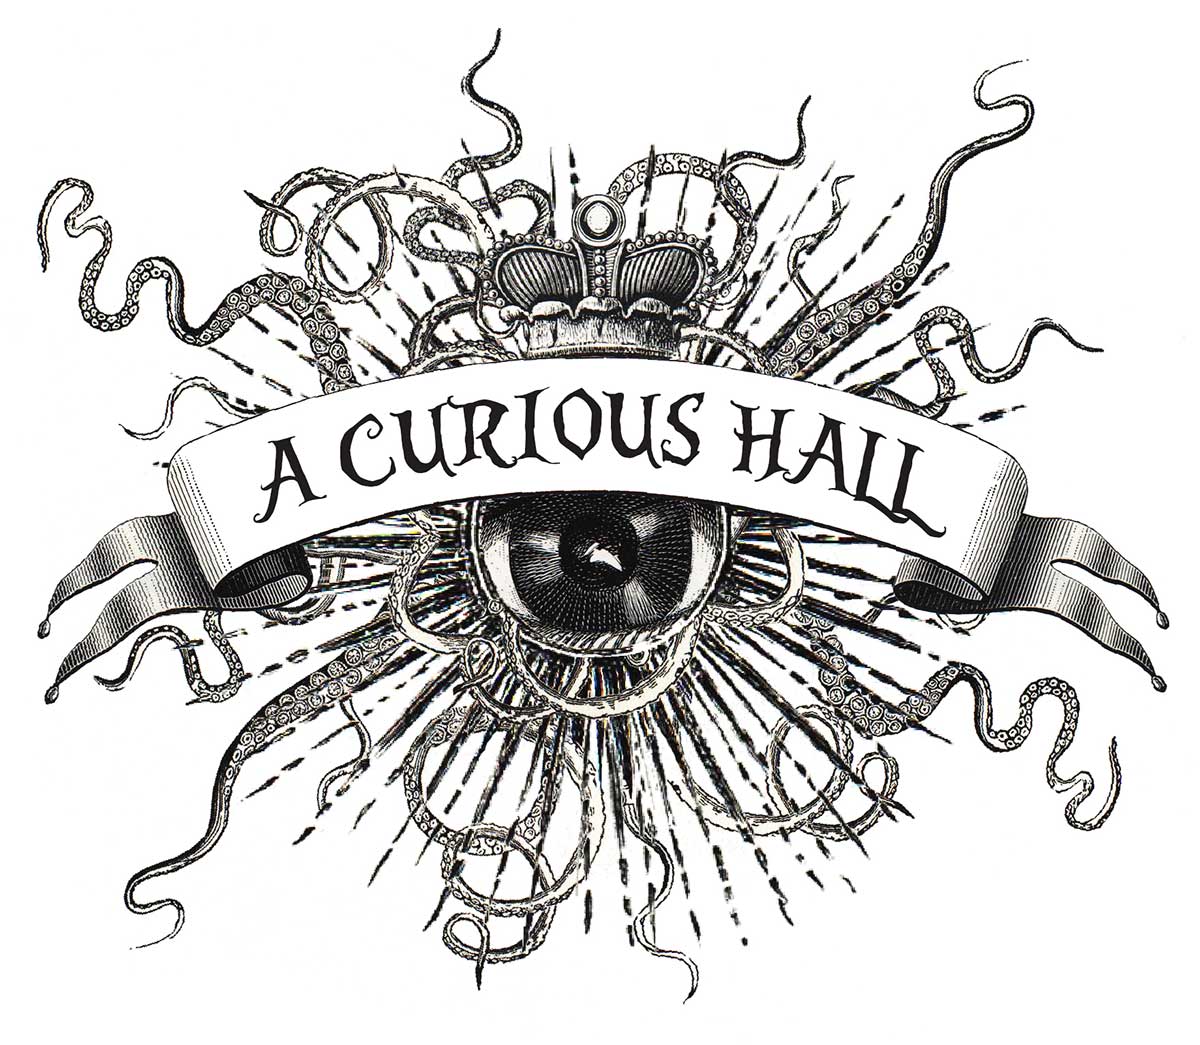 A Curious Hall